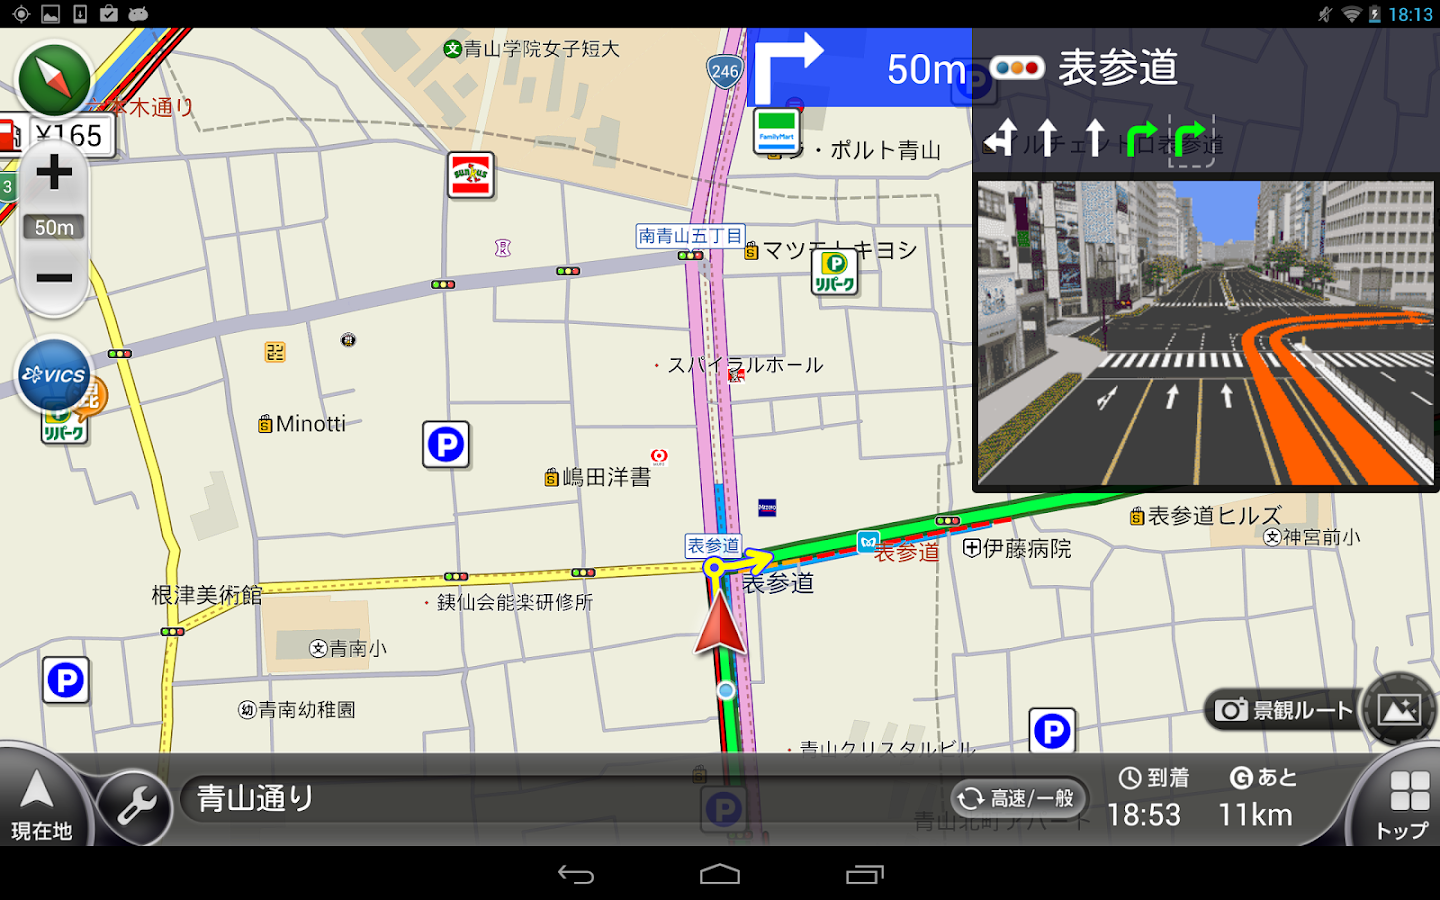 カーナビ/渋滞/オービス-NAVITIMEドライブサポーター - Android Apps on ...1440 x 900